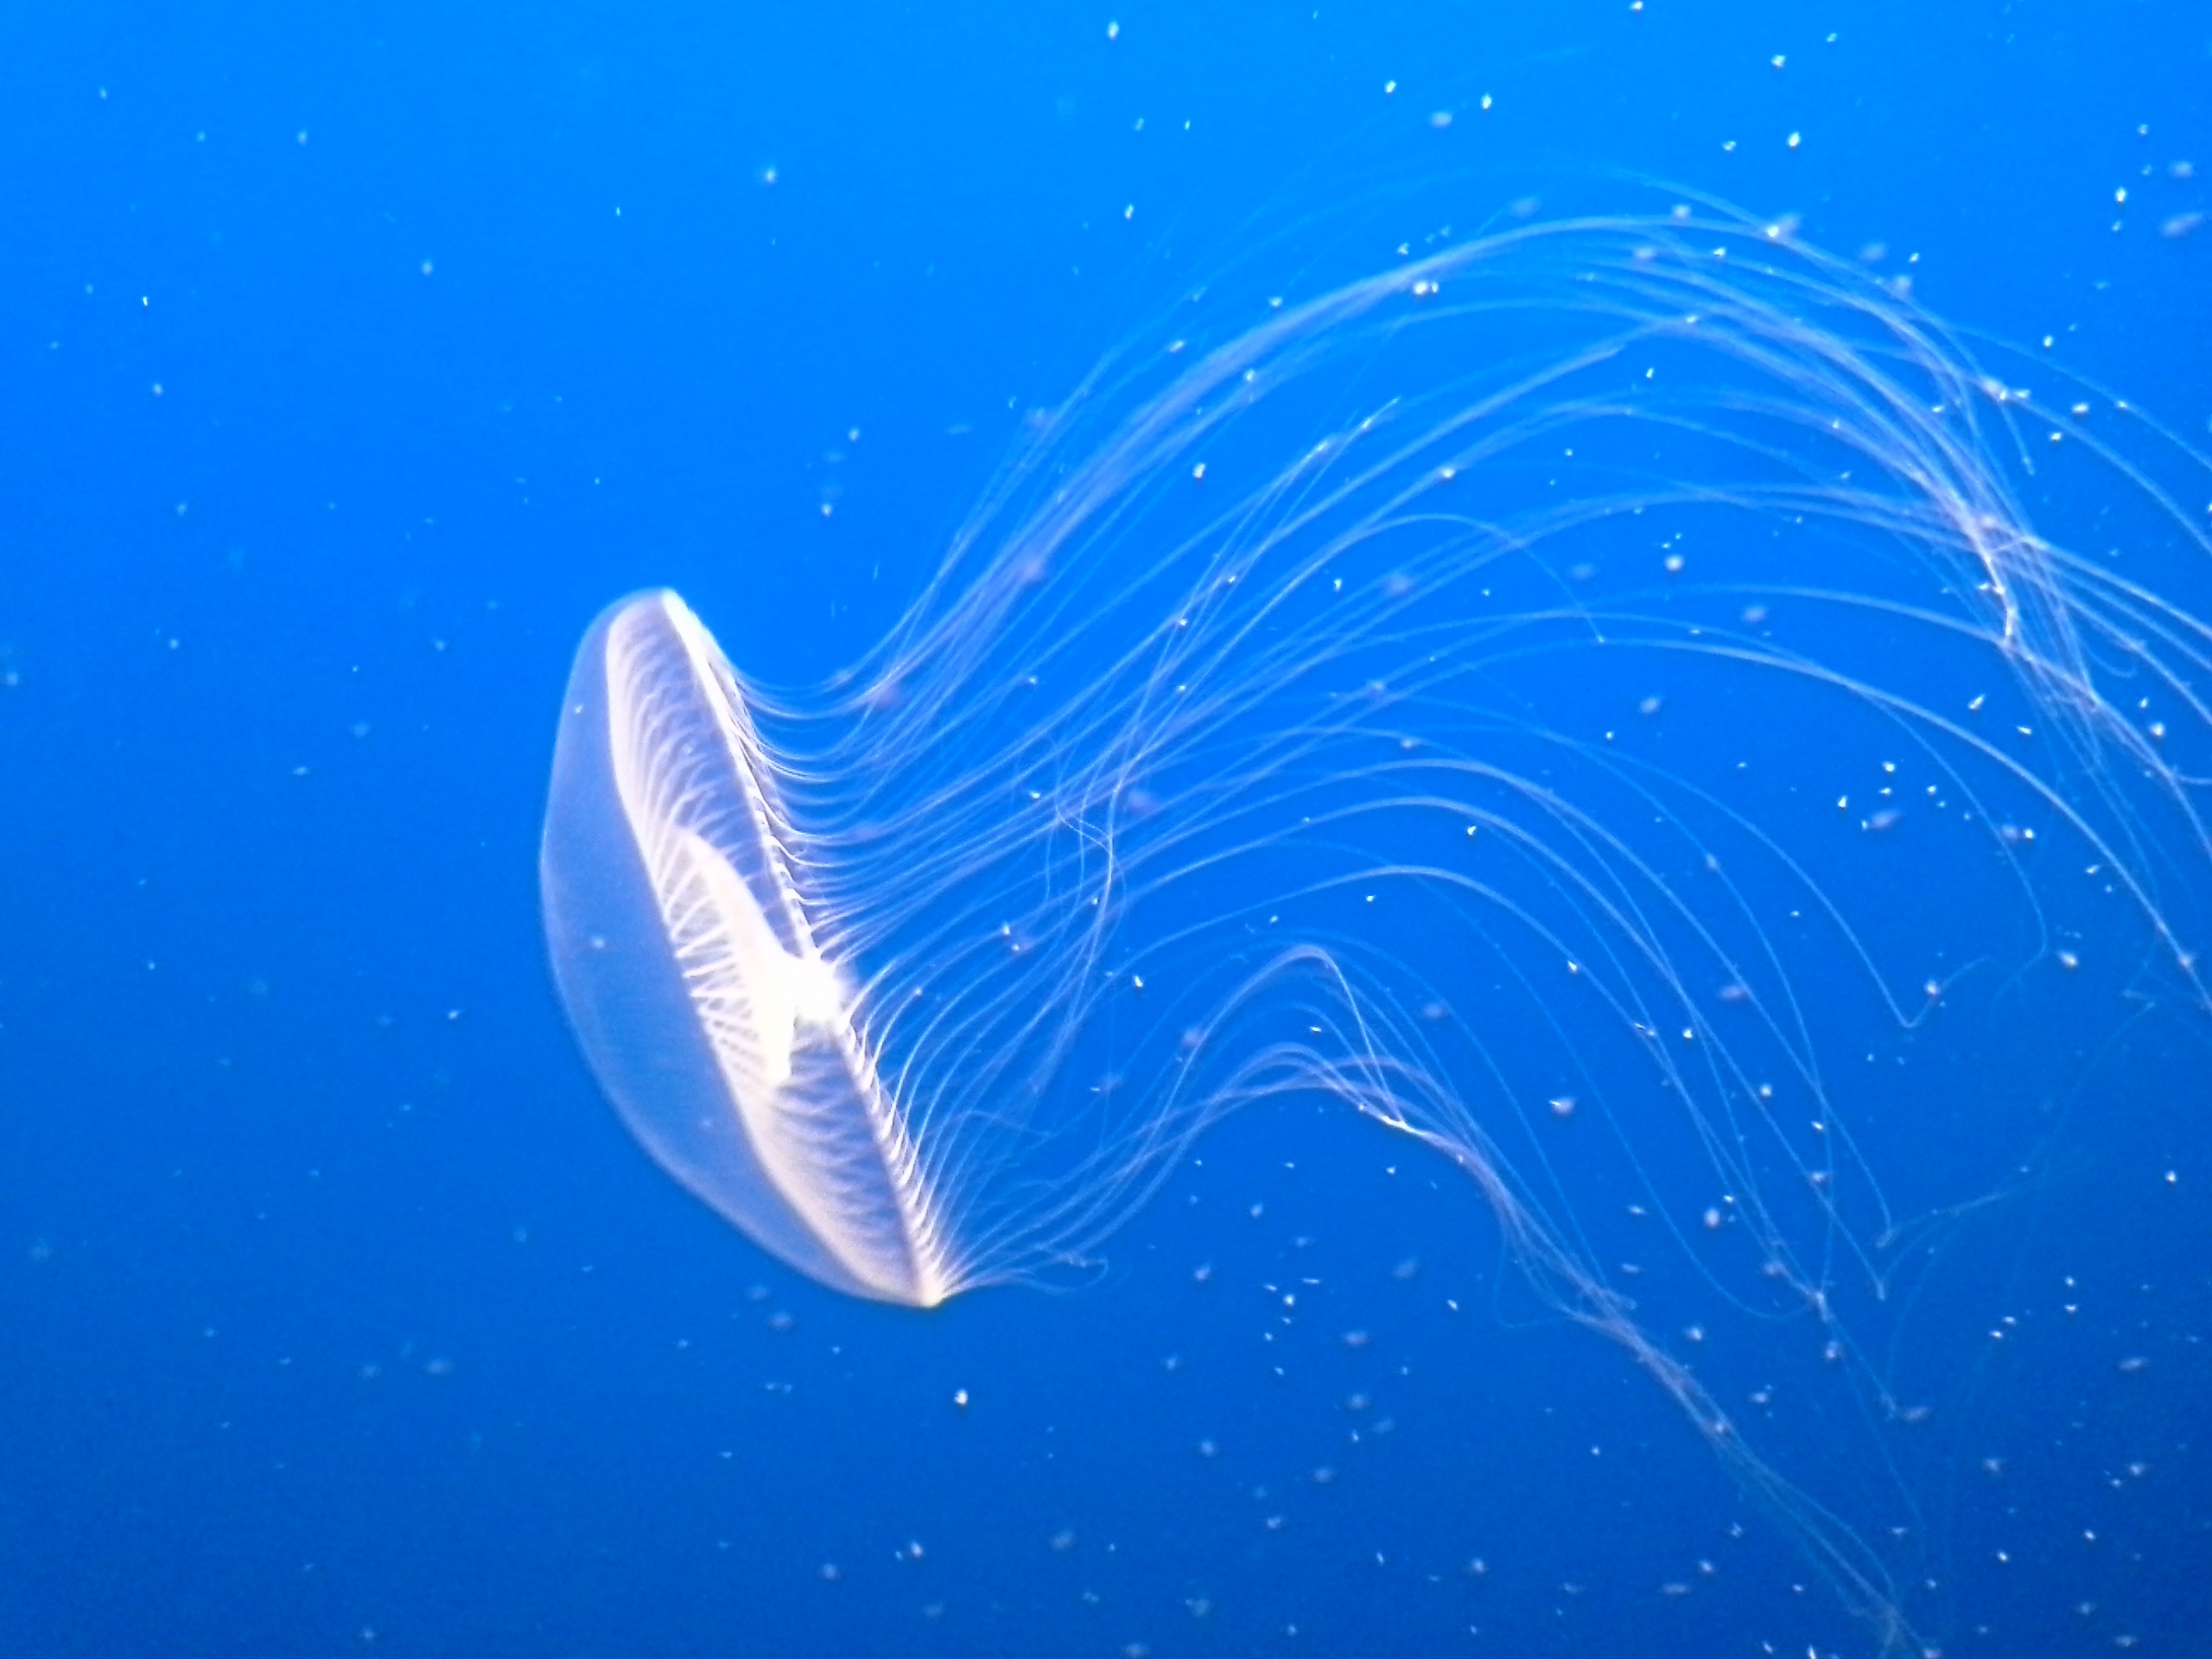 White luminous jellyfish in blue water free image